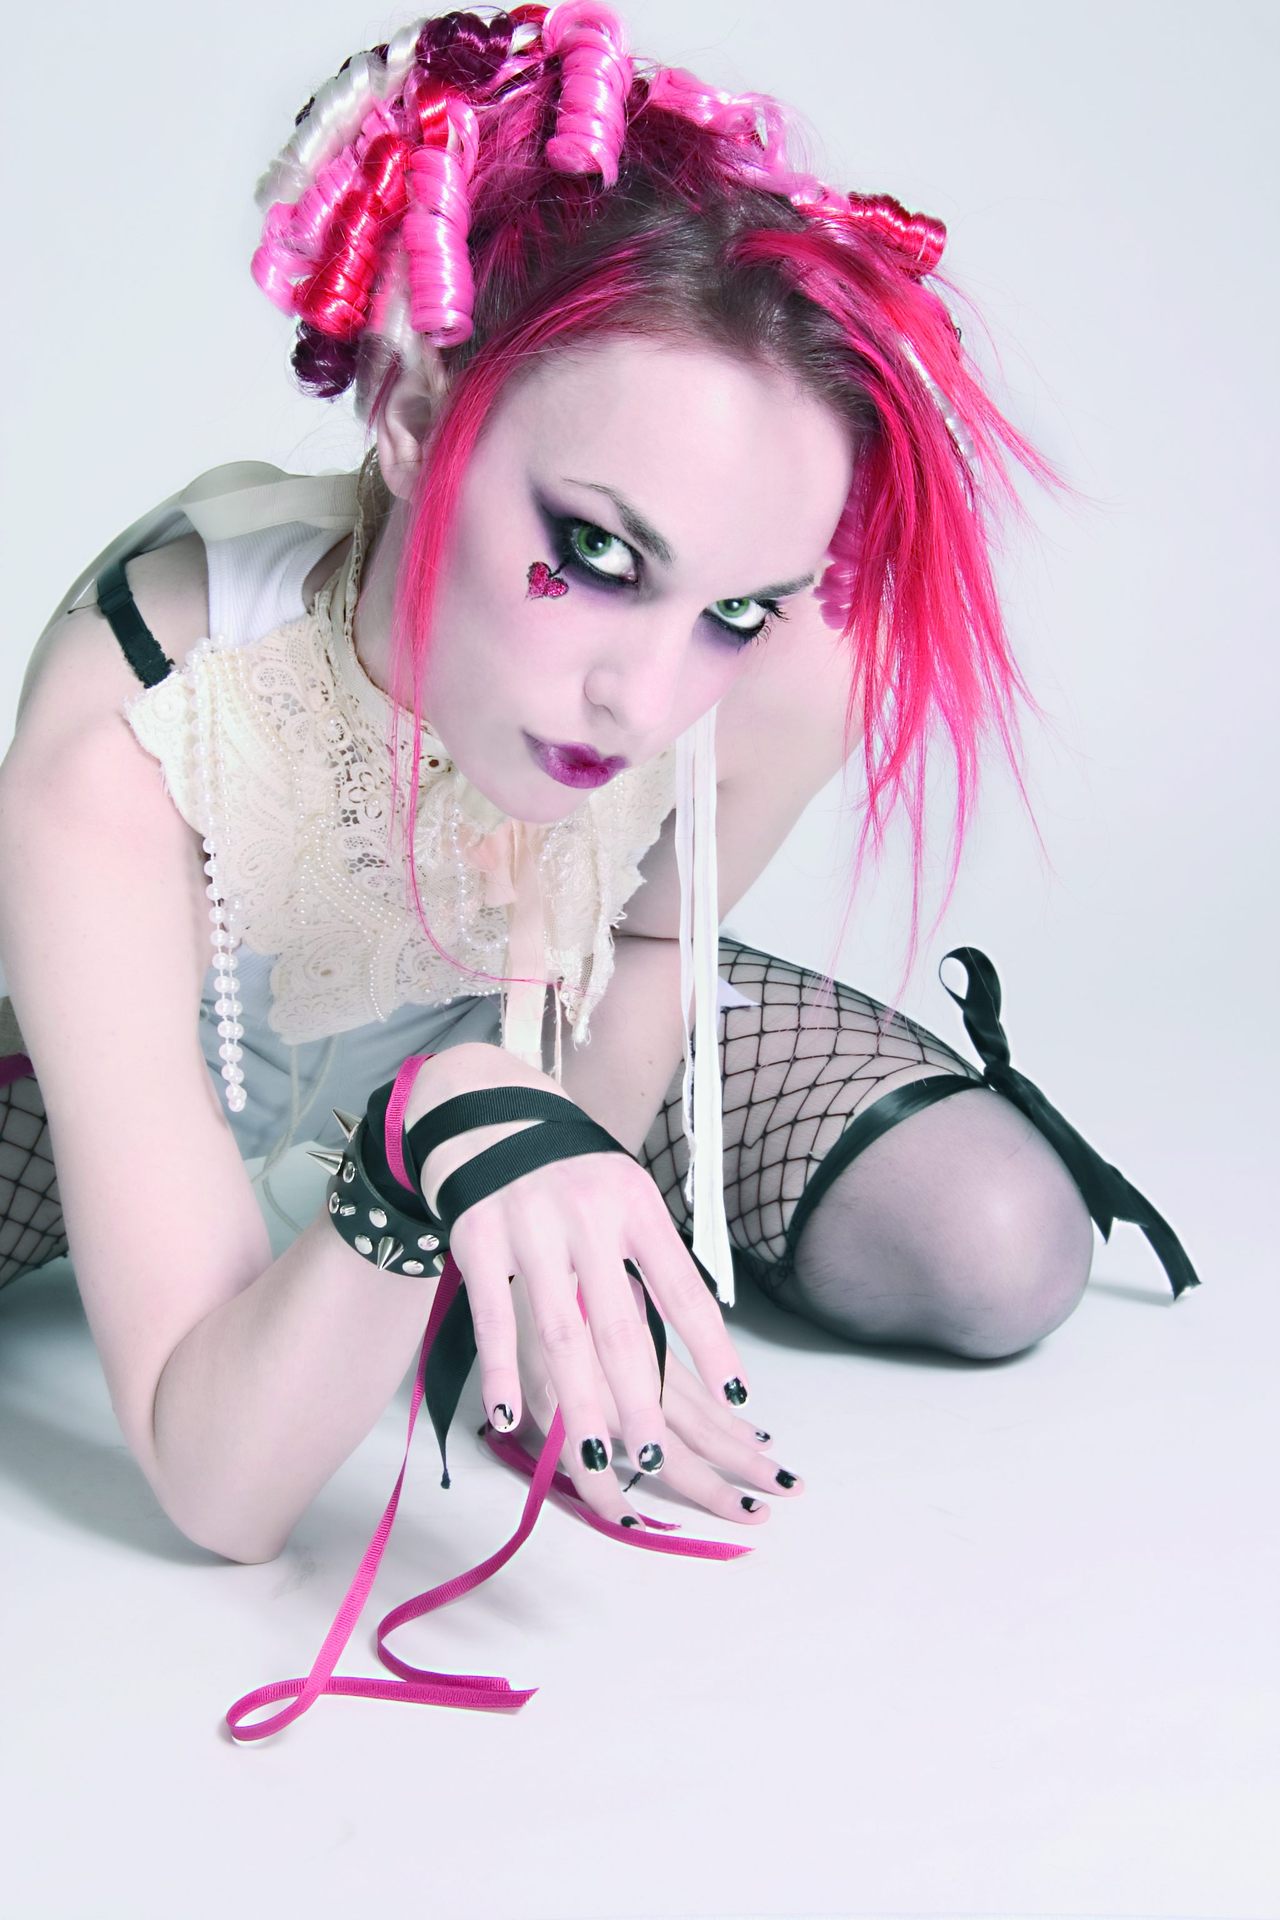 Emilie Autumn Backgrounds, Compatible - PC, Mobile, Gadgets| 1280x1920 px